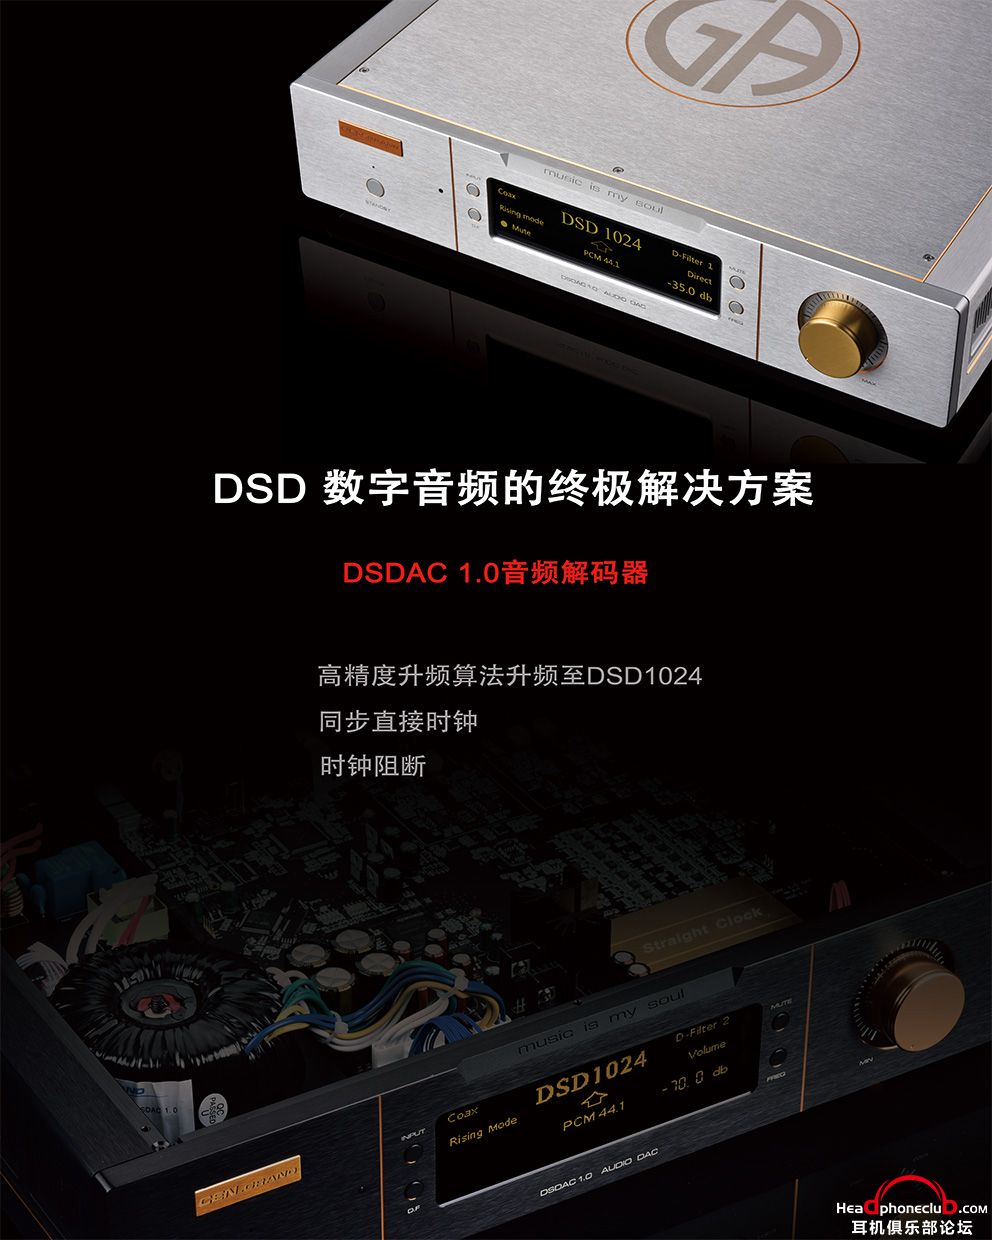 DSDAC.jpg